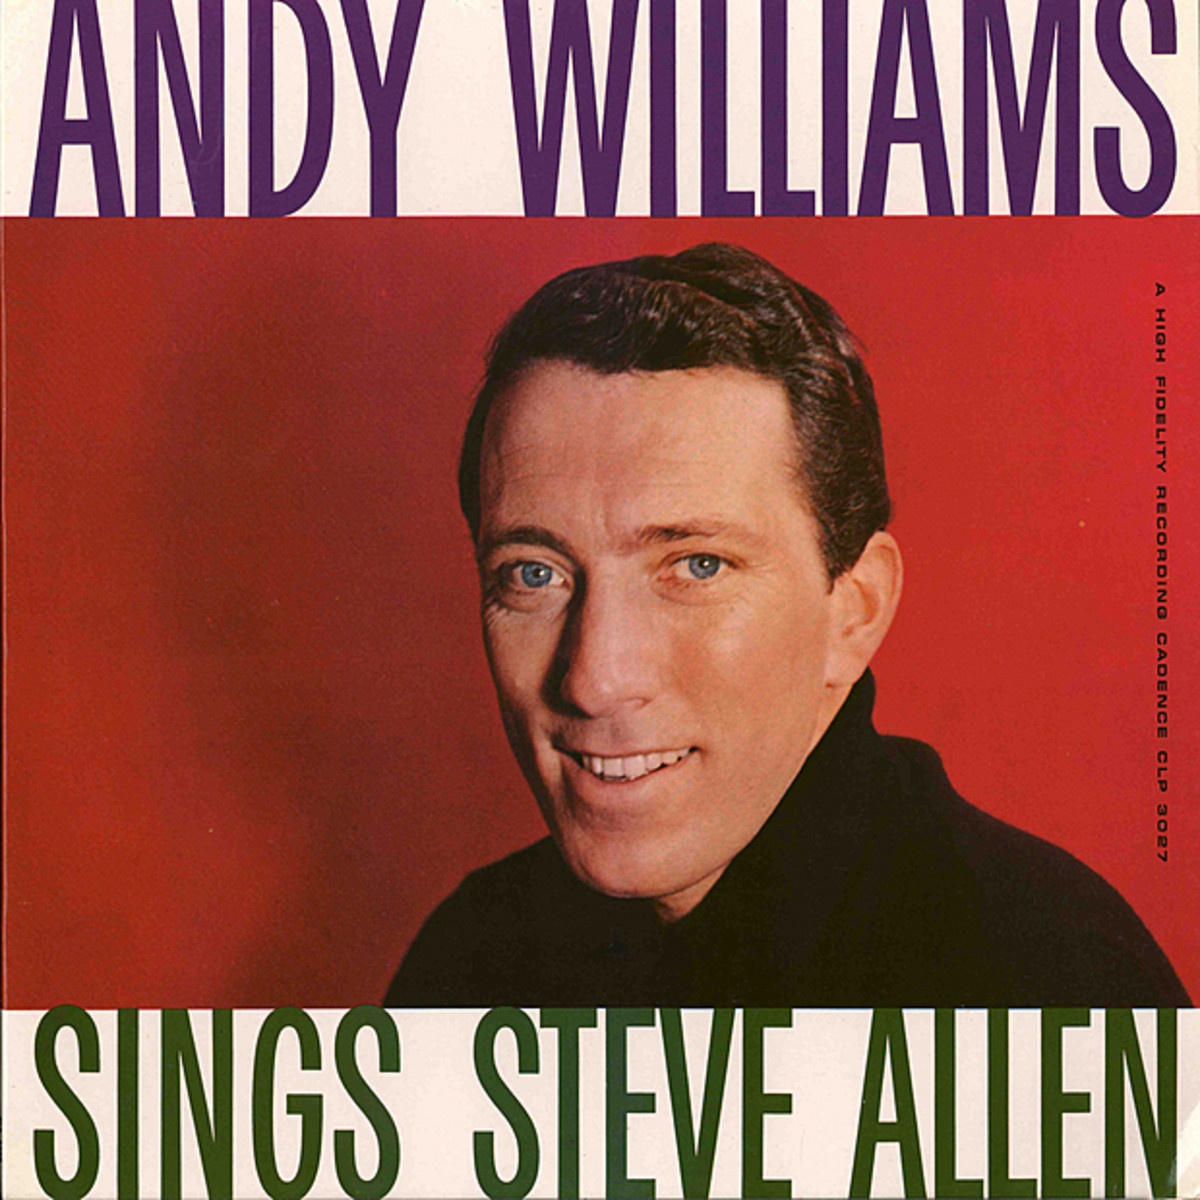 Andy Williams Sings Steve Allen